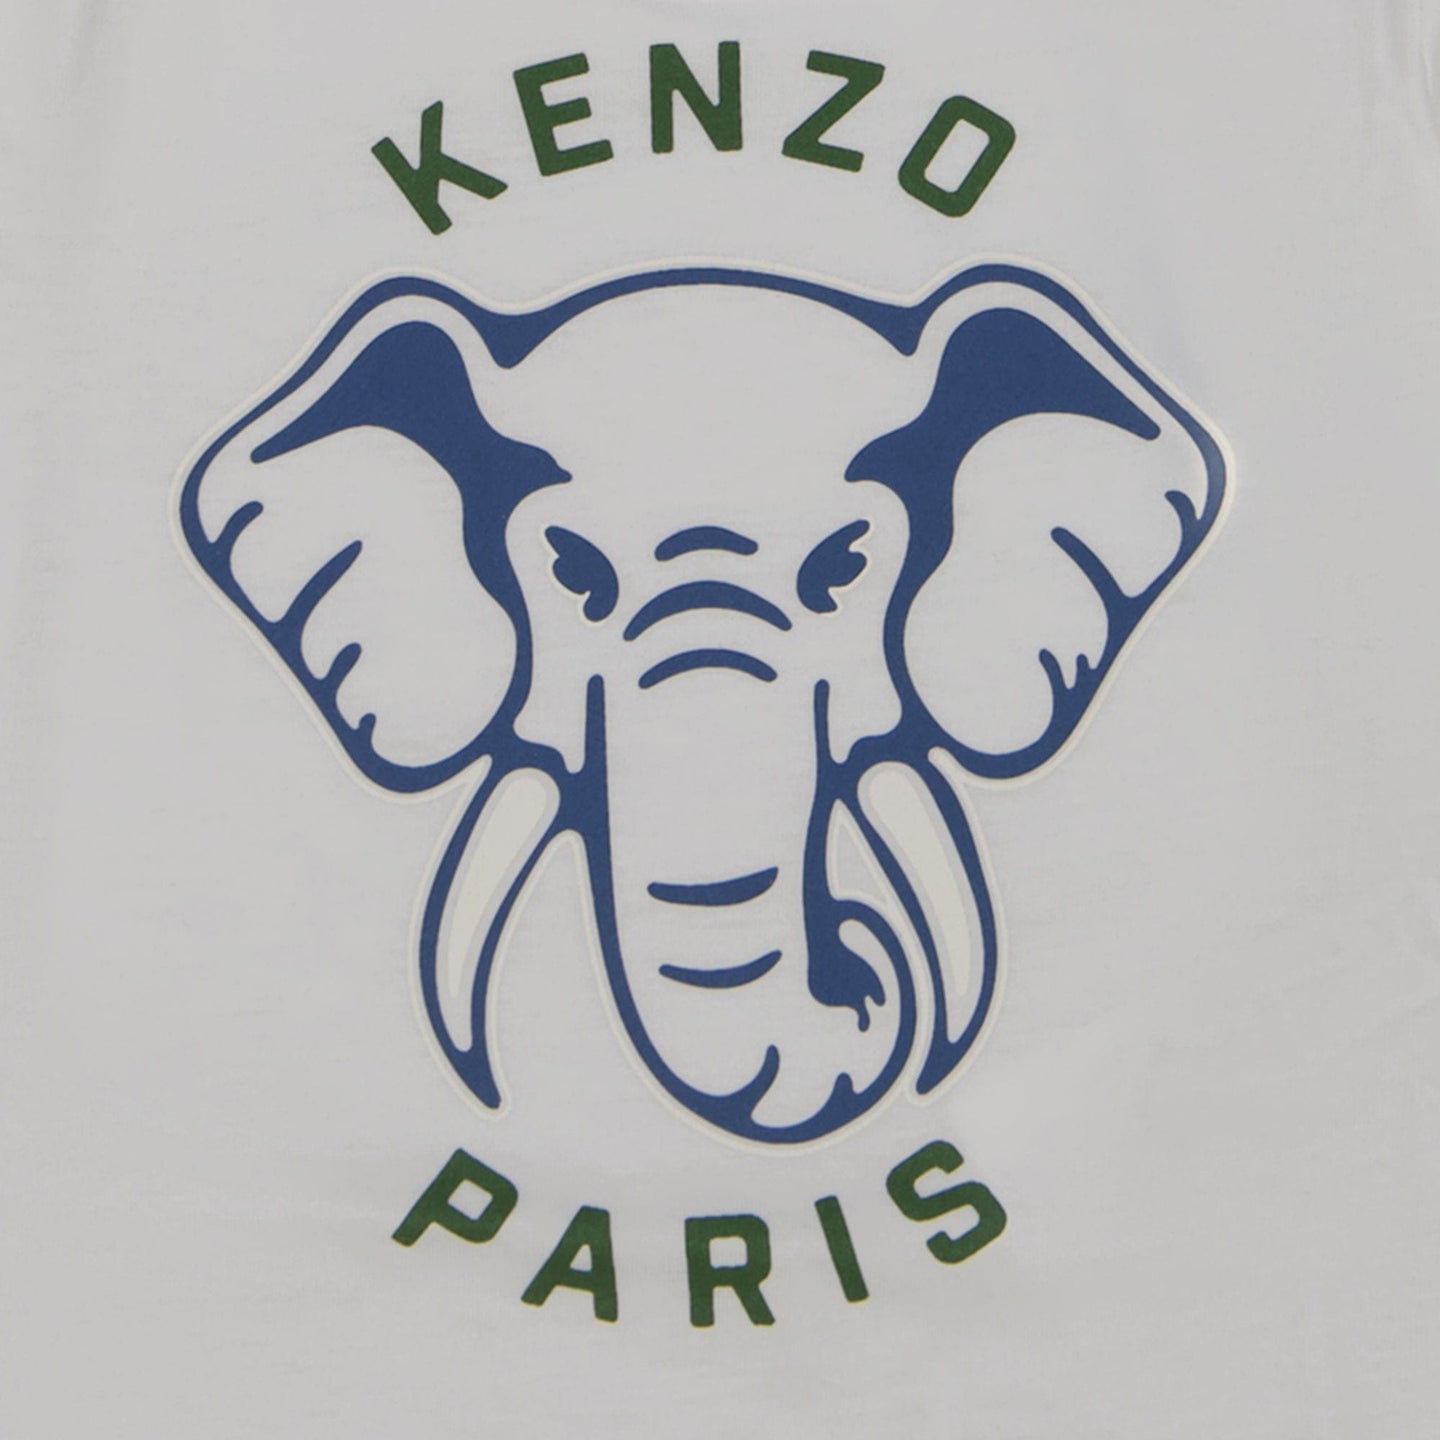 Kenzo Kids Baby Jongens T-shirt Wit 6 mnd